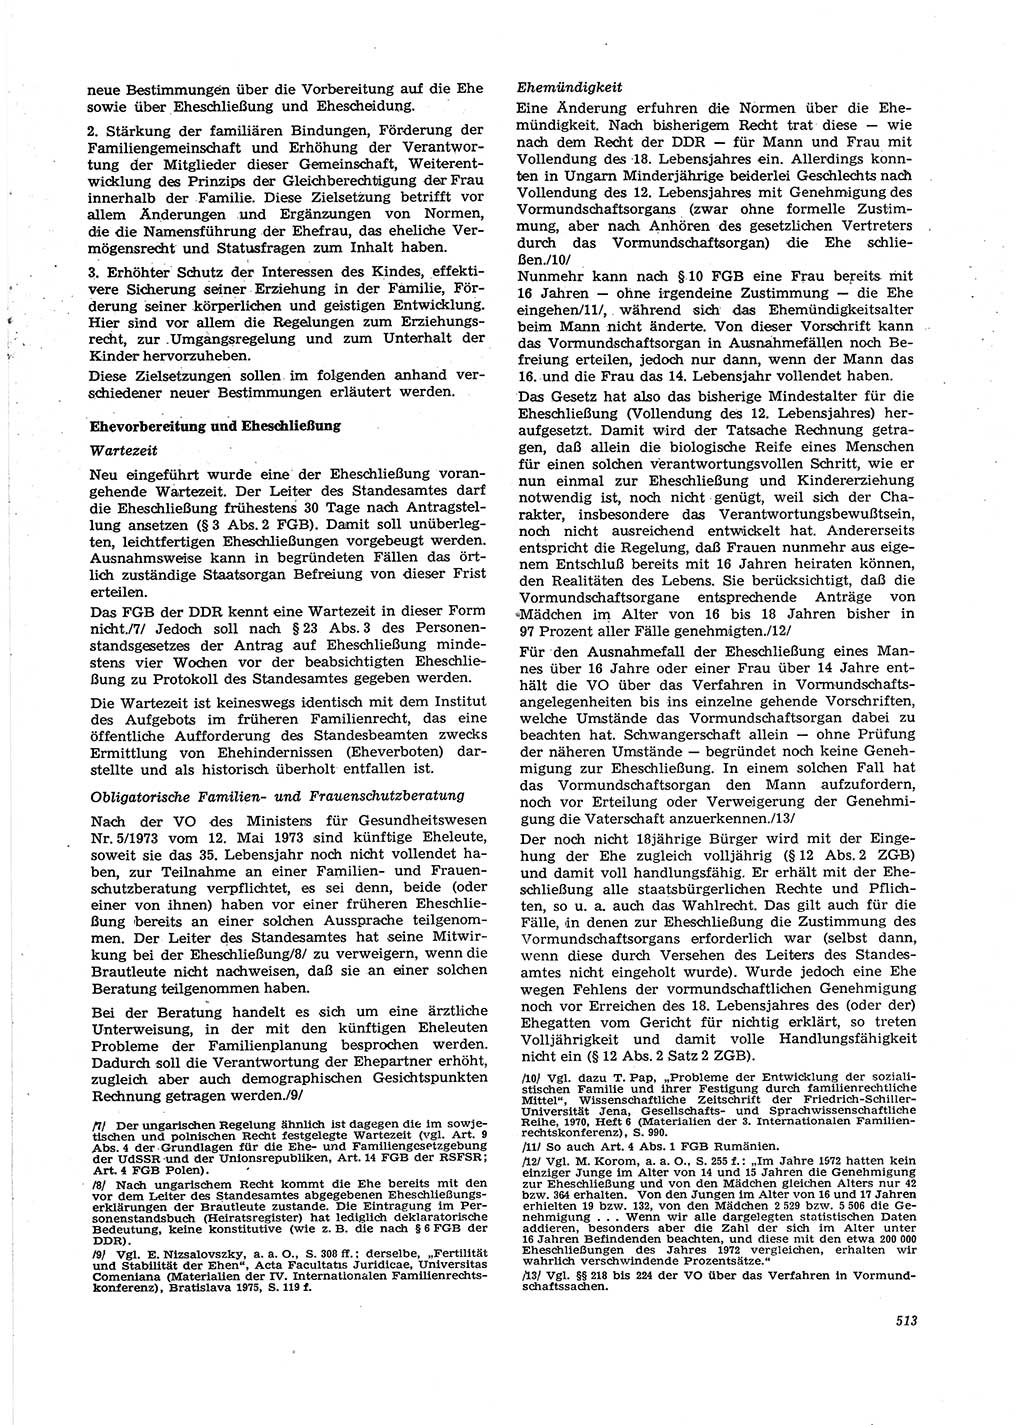 Neue Justiz (NJ), Zeitschrift für Recht und Rechtswissenschaft [Deutsche Demokratische Republik (DDR)], 29. Jahrgang 1975, Seite 513 (NJ DDR 1975, S. 513)